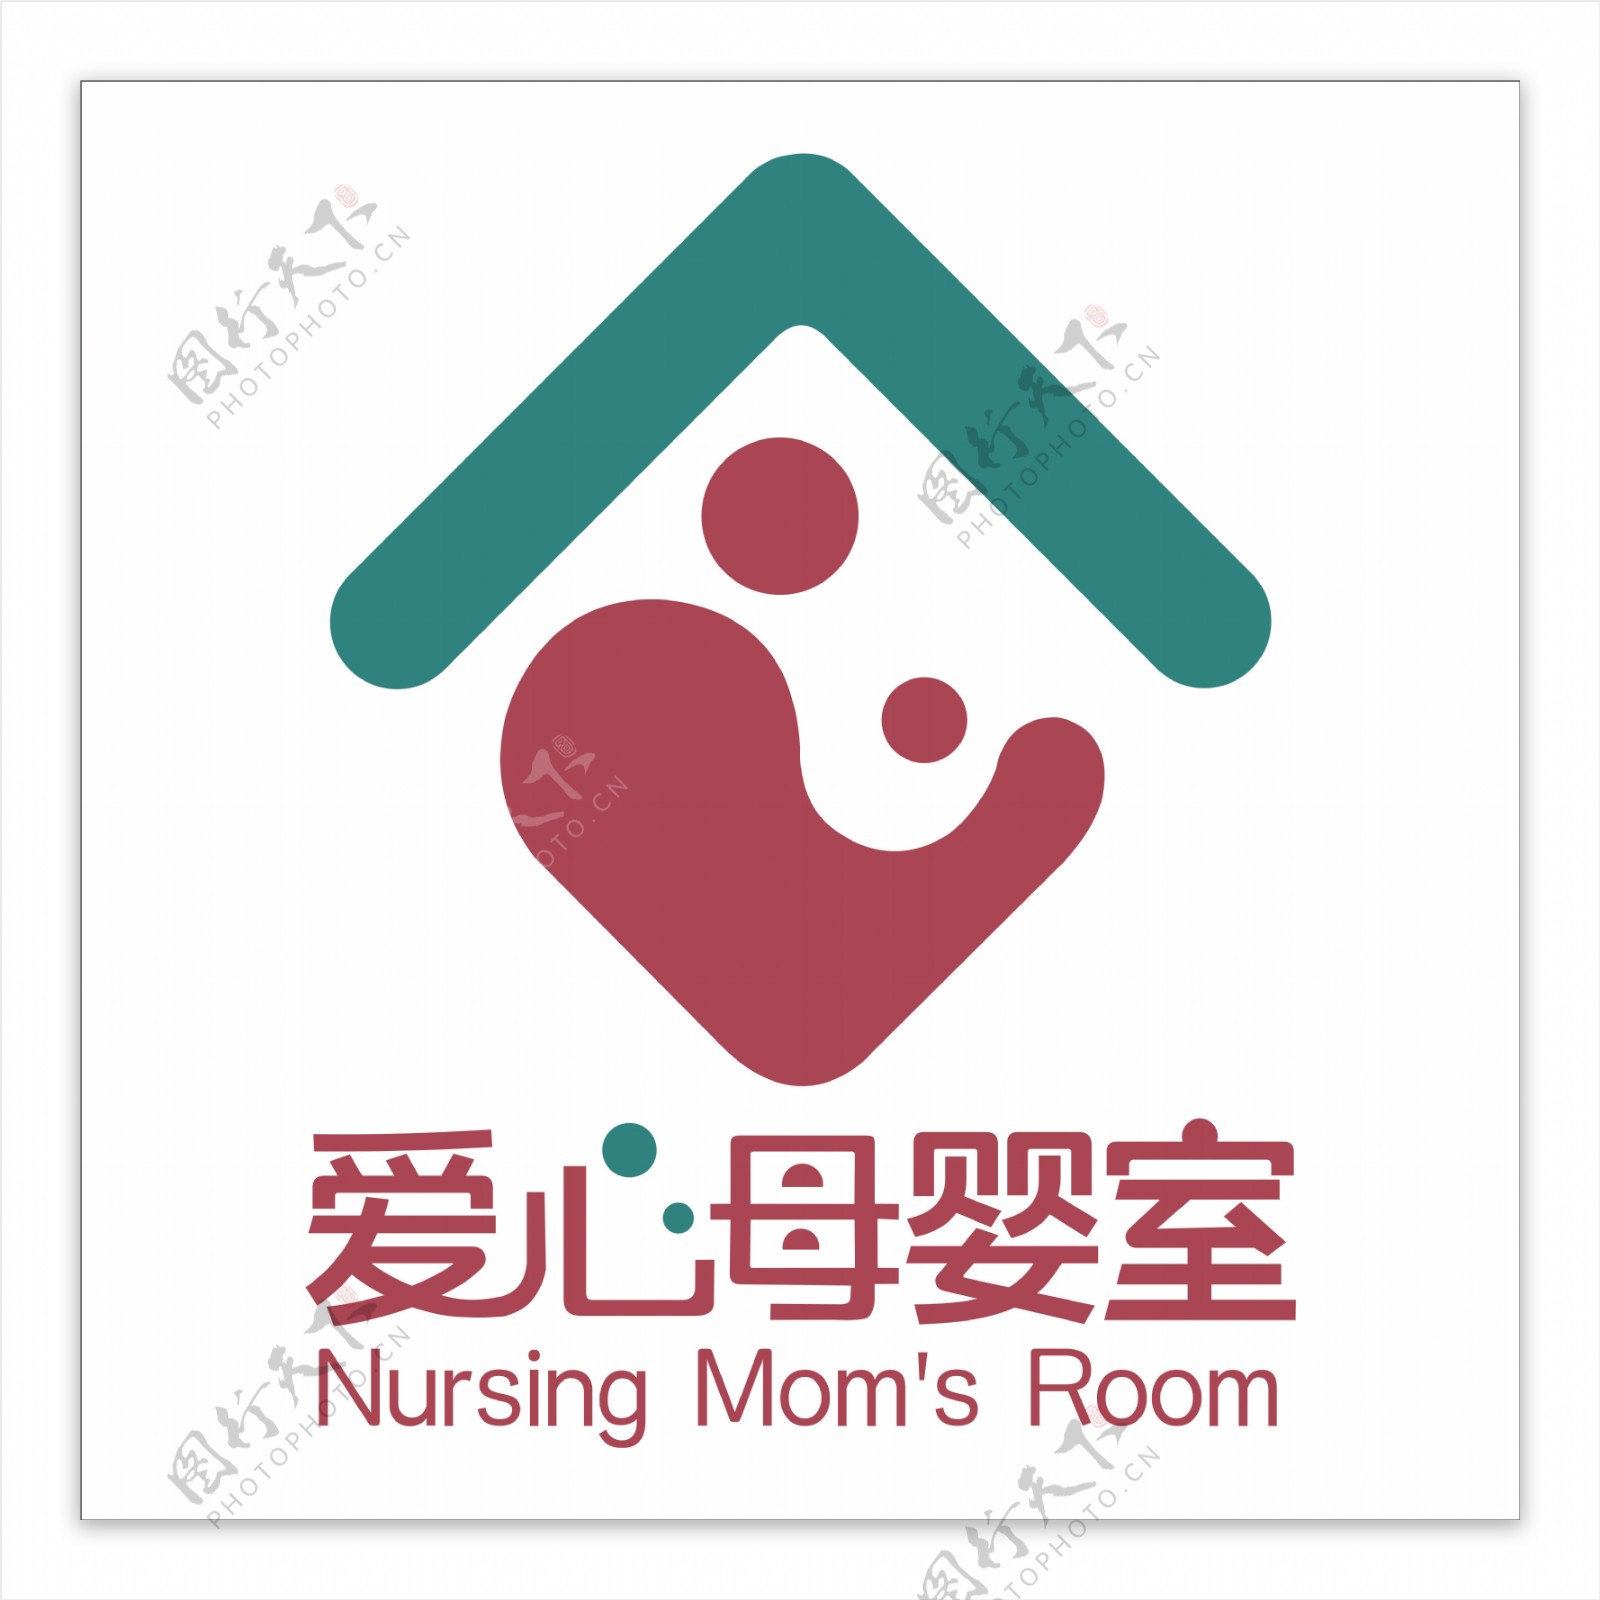 爱心母婴室图标标识